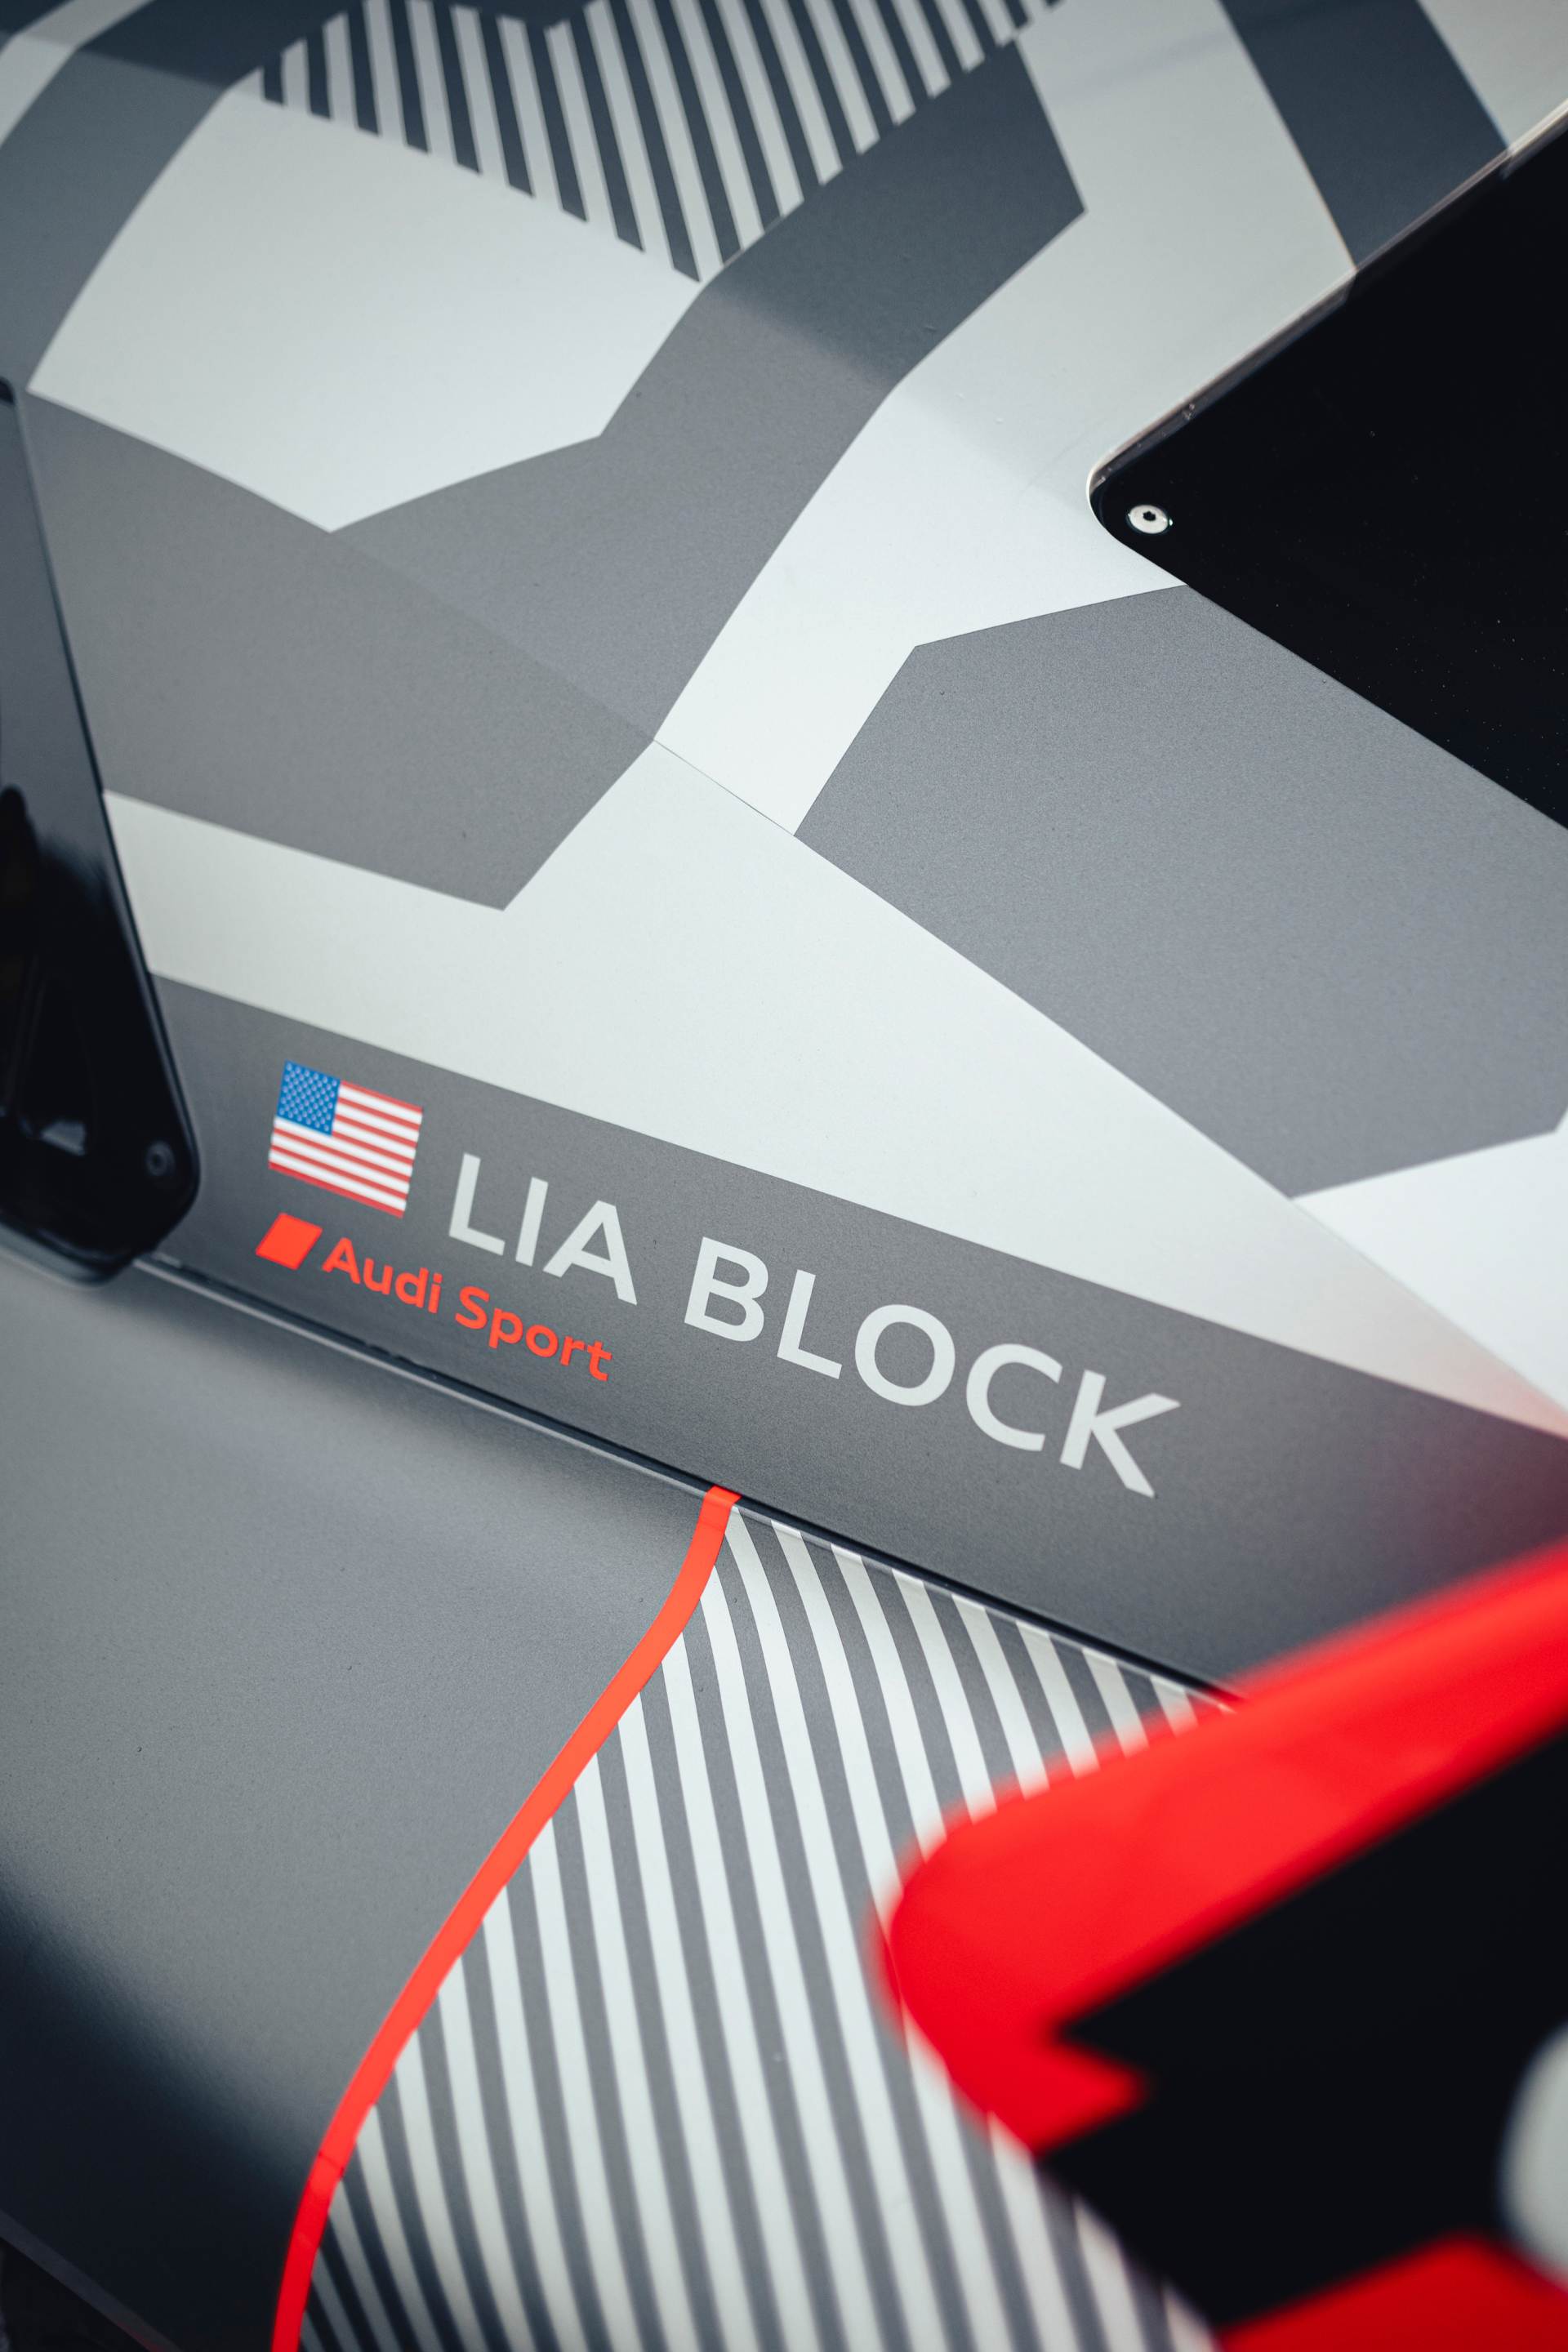 Der Name Lia Block erscheint an der Seite des Audi S1 Hoonitron.